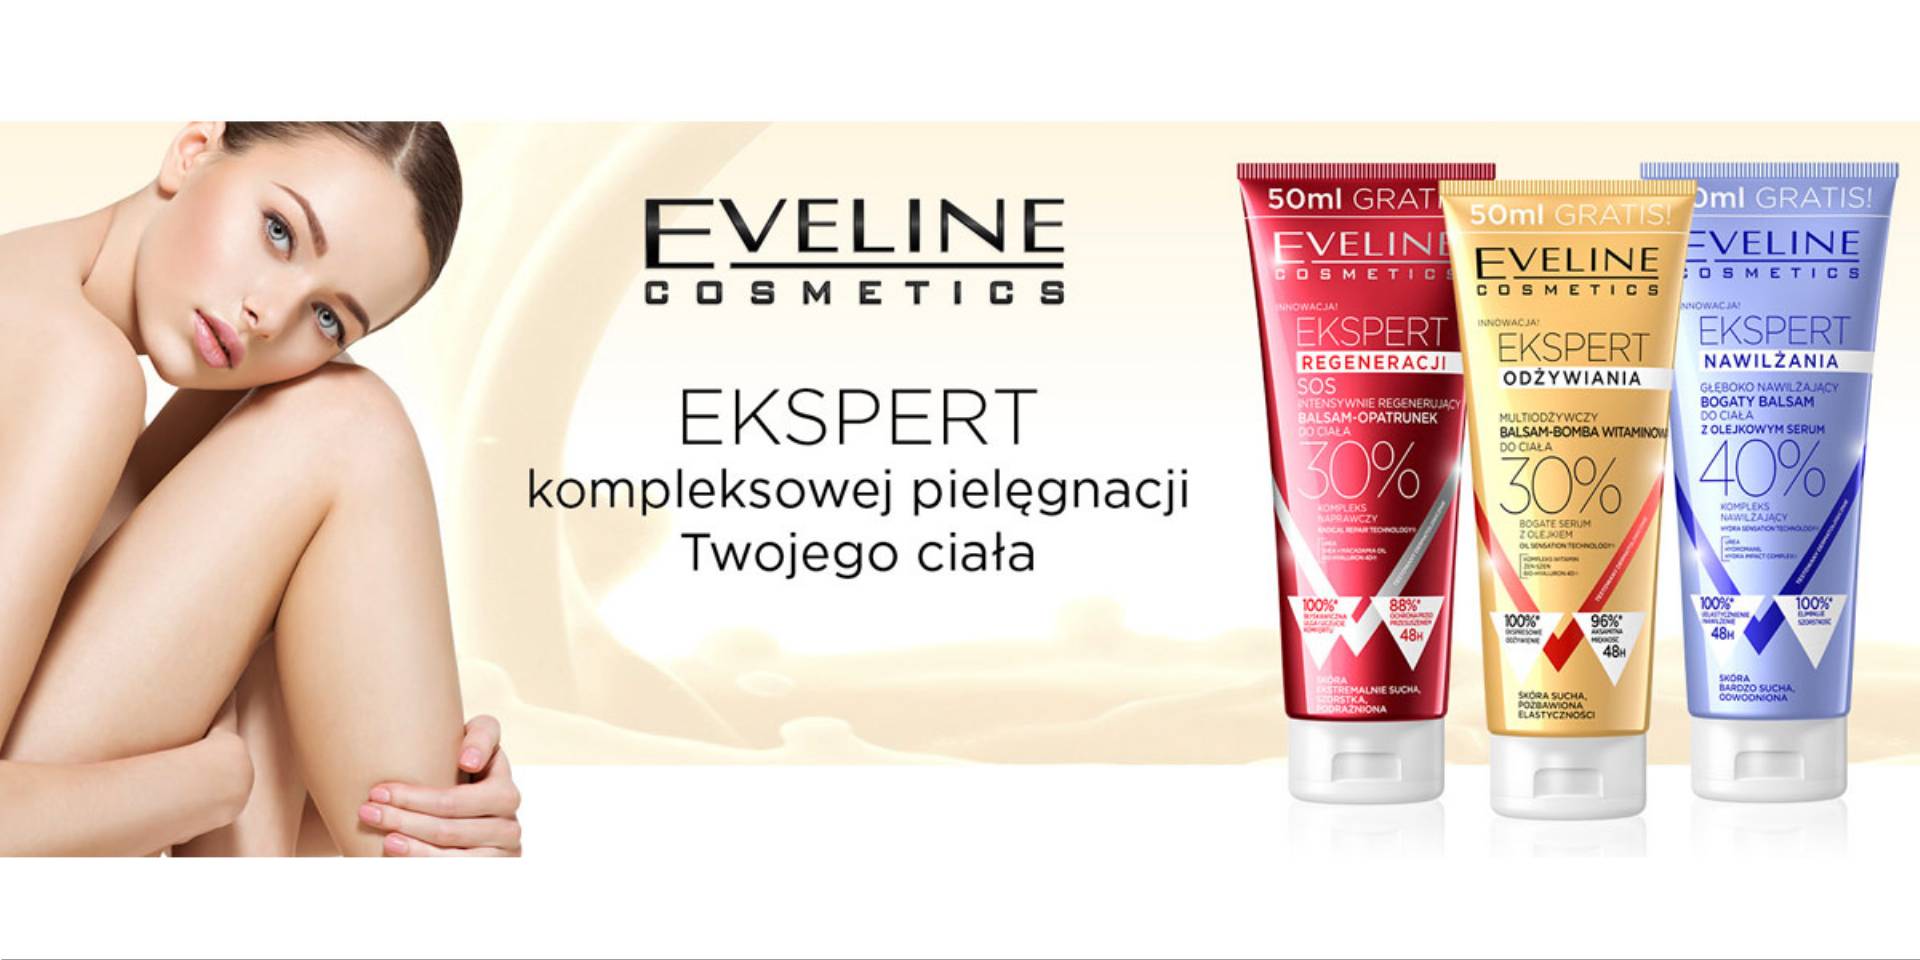 Эвелин тг канал. Эвелин косметика обложка. Eveline Cosmetics баннер. Eveline Cosmetics реклама. Eveline логотип.